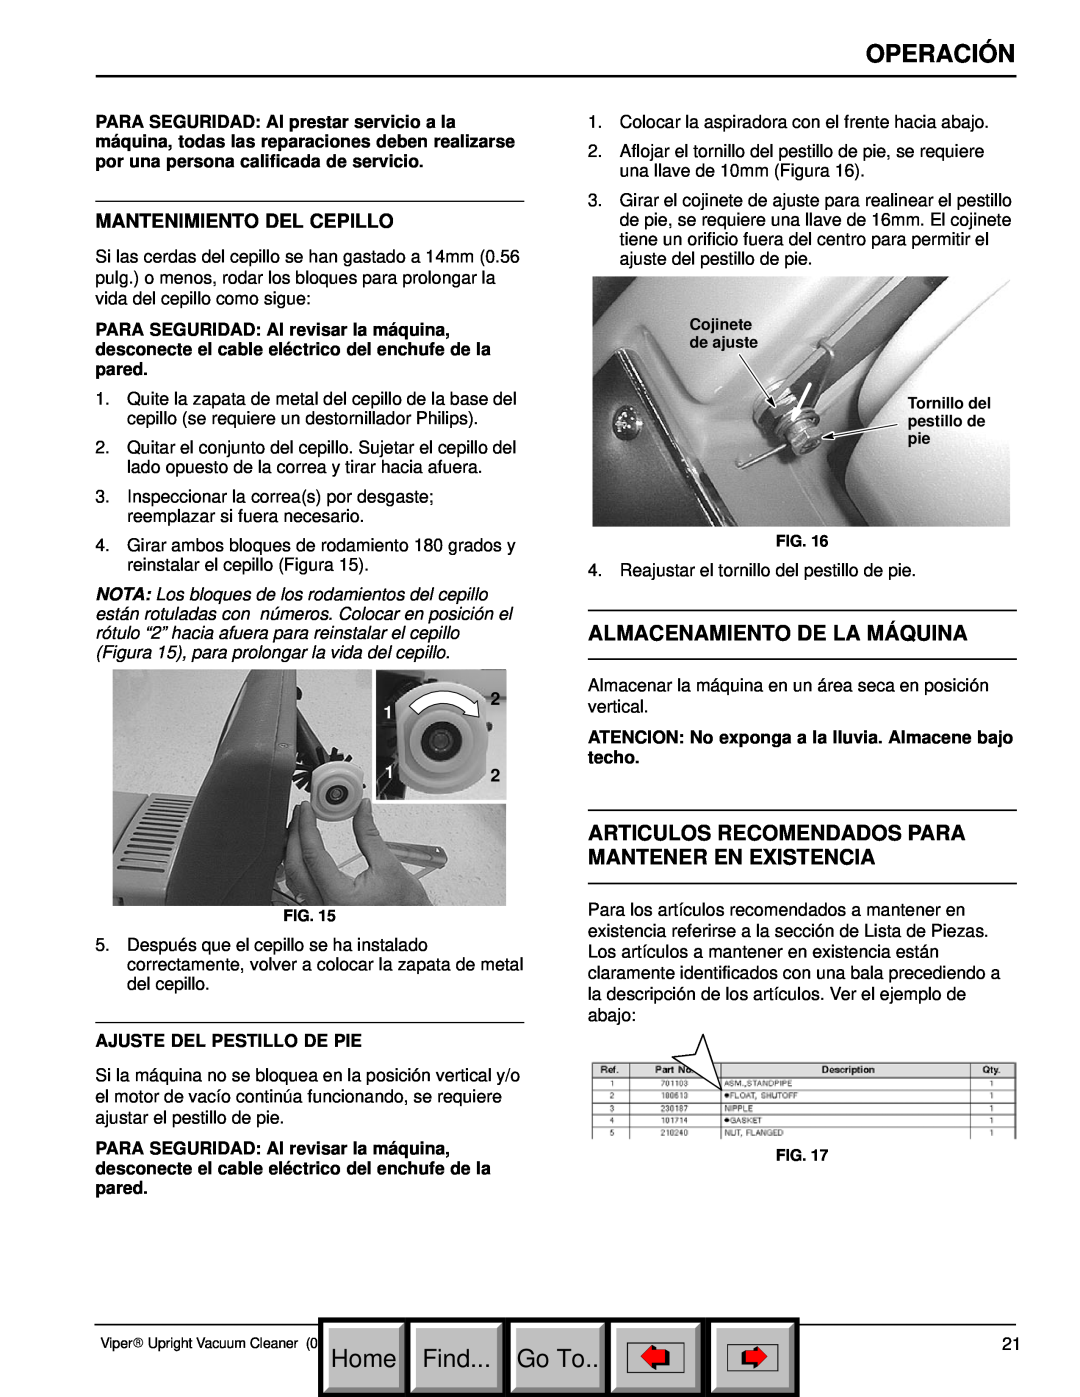 Philips 608669 manual Almacenamiento De La Máquina, Mantenimiento Del Cepillo, Operación, Home Find, Go To 